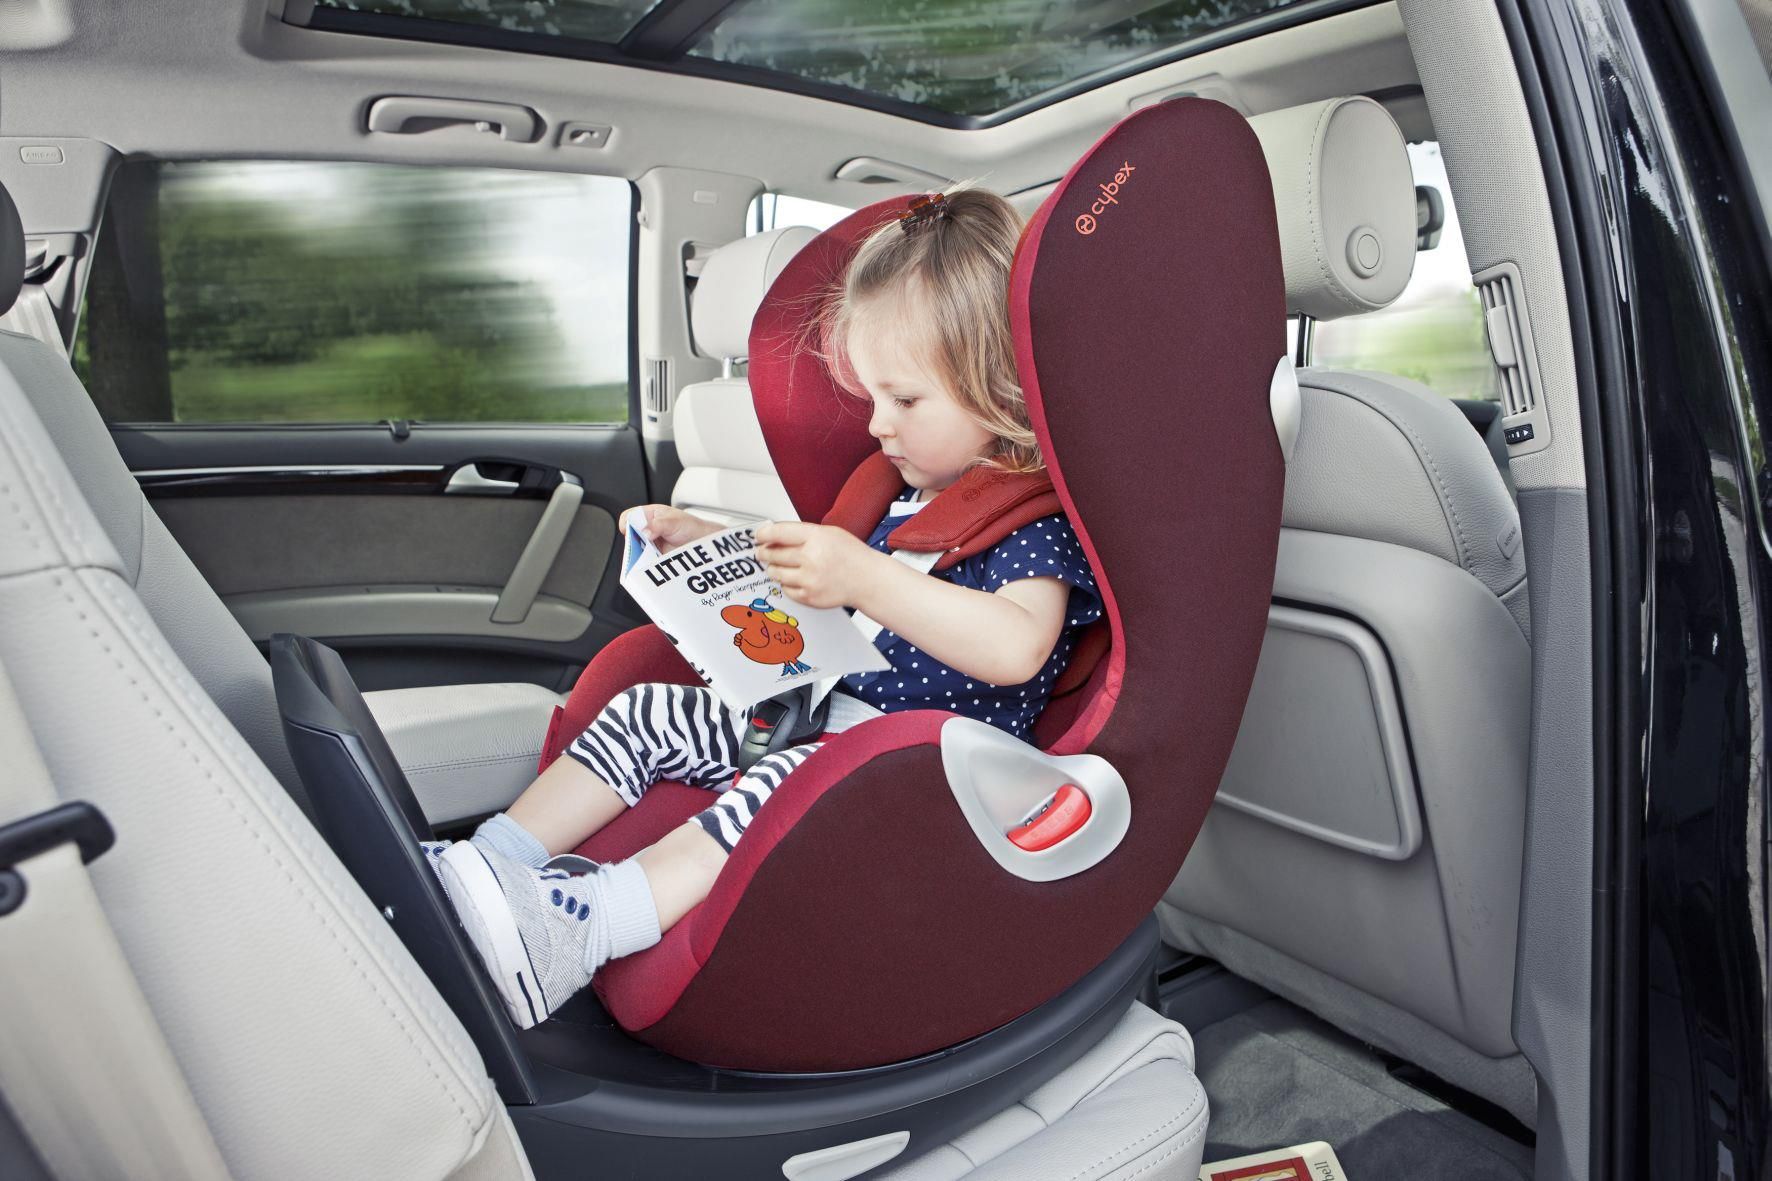 Las cuatro sillas infantiles para el coche que los expertos desaconsejan